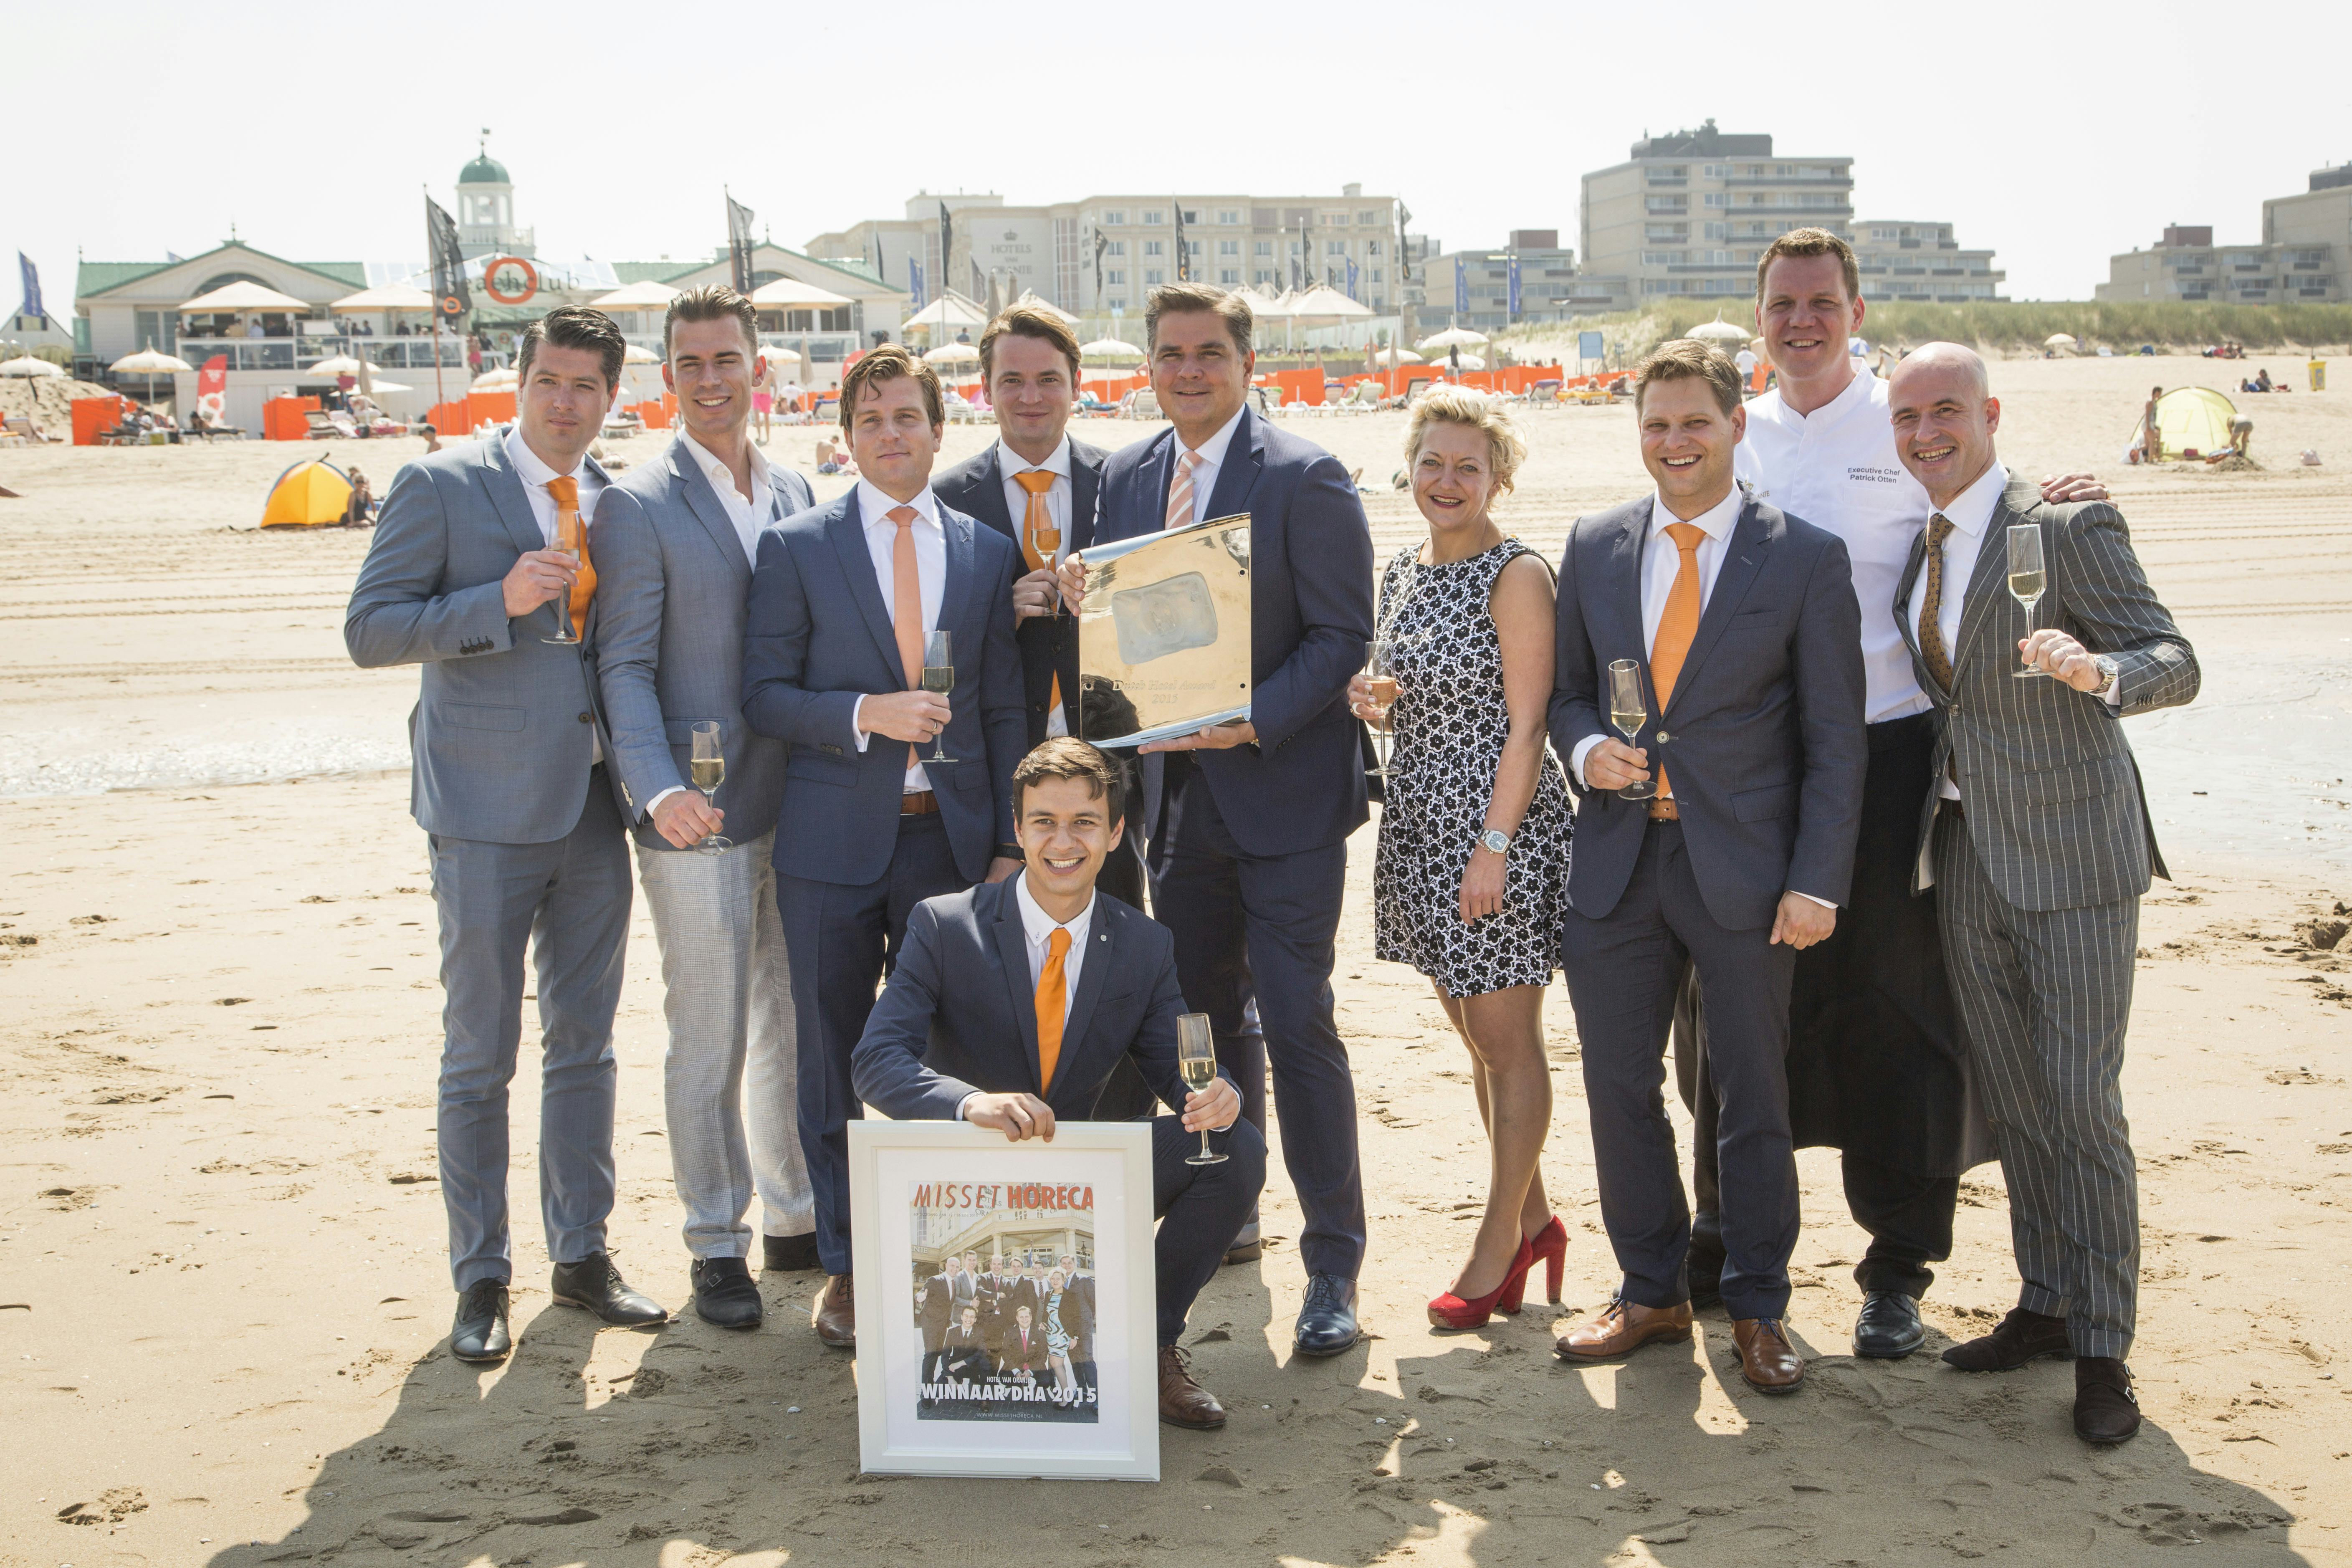 Deelnemers: ‘open inschrijving Dutch Hotel Award biedt kansen’